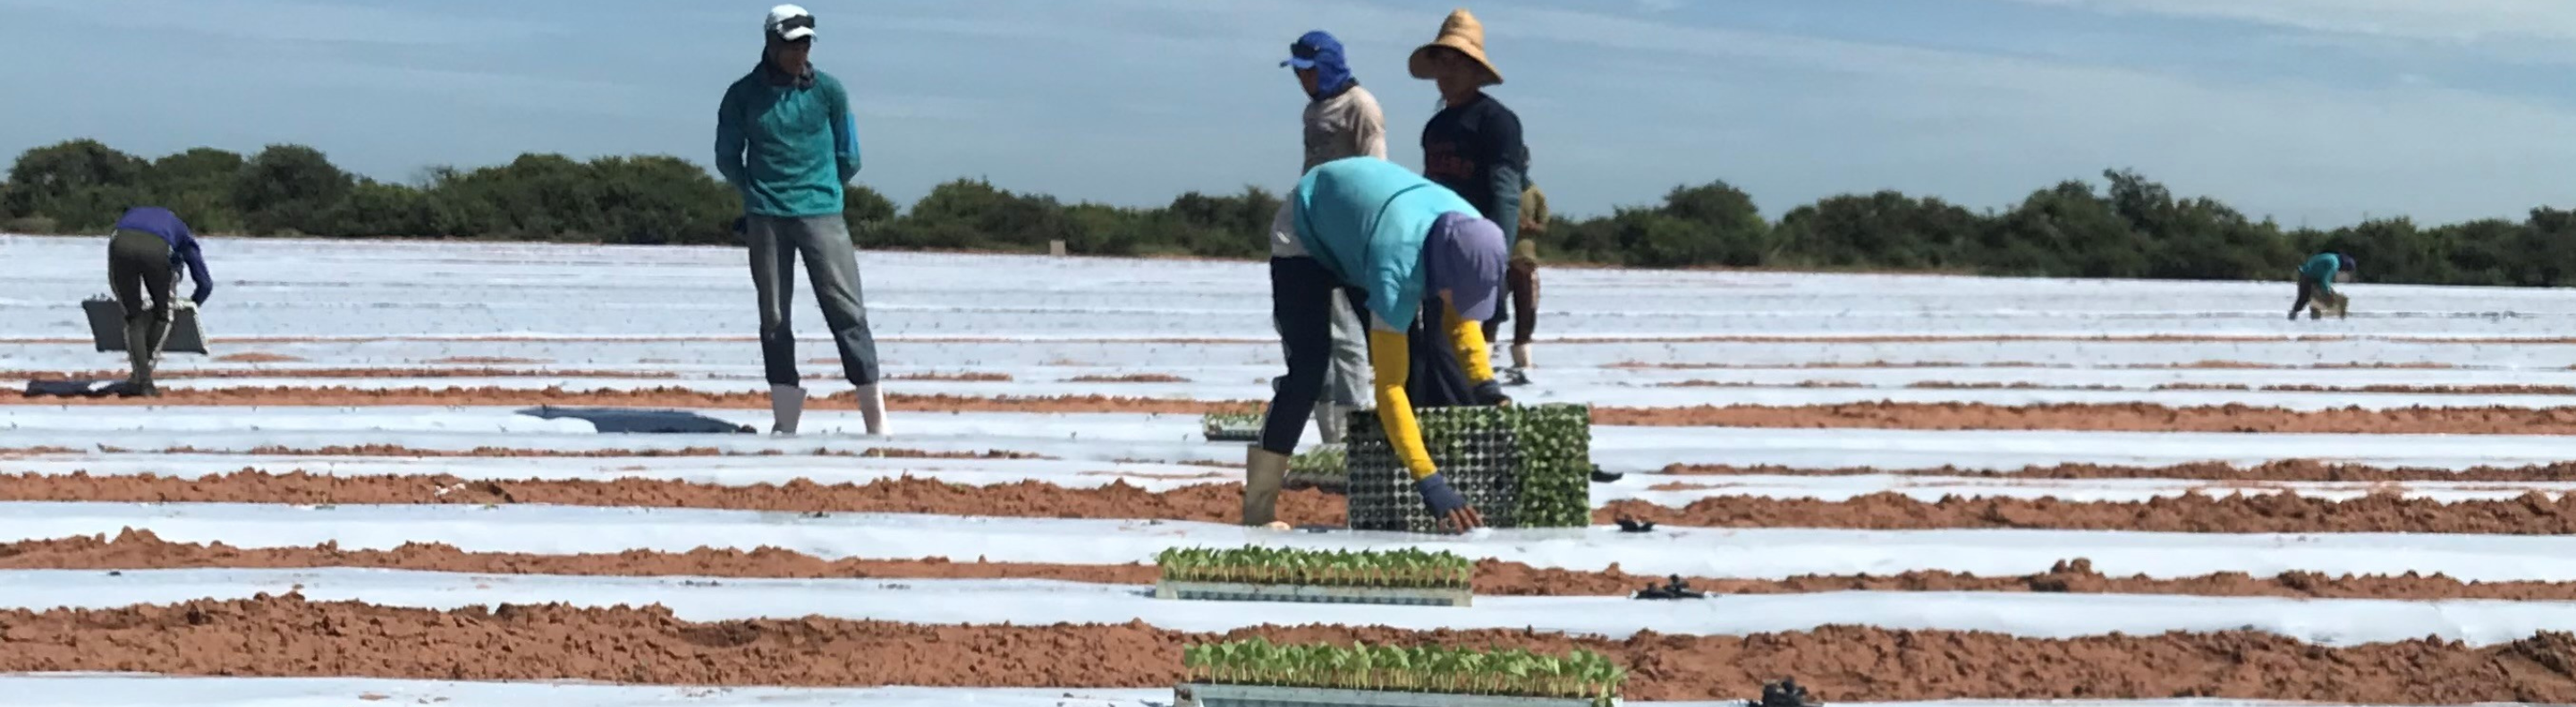 Imagem mostra trabalhadores em área de agricultura irrigada